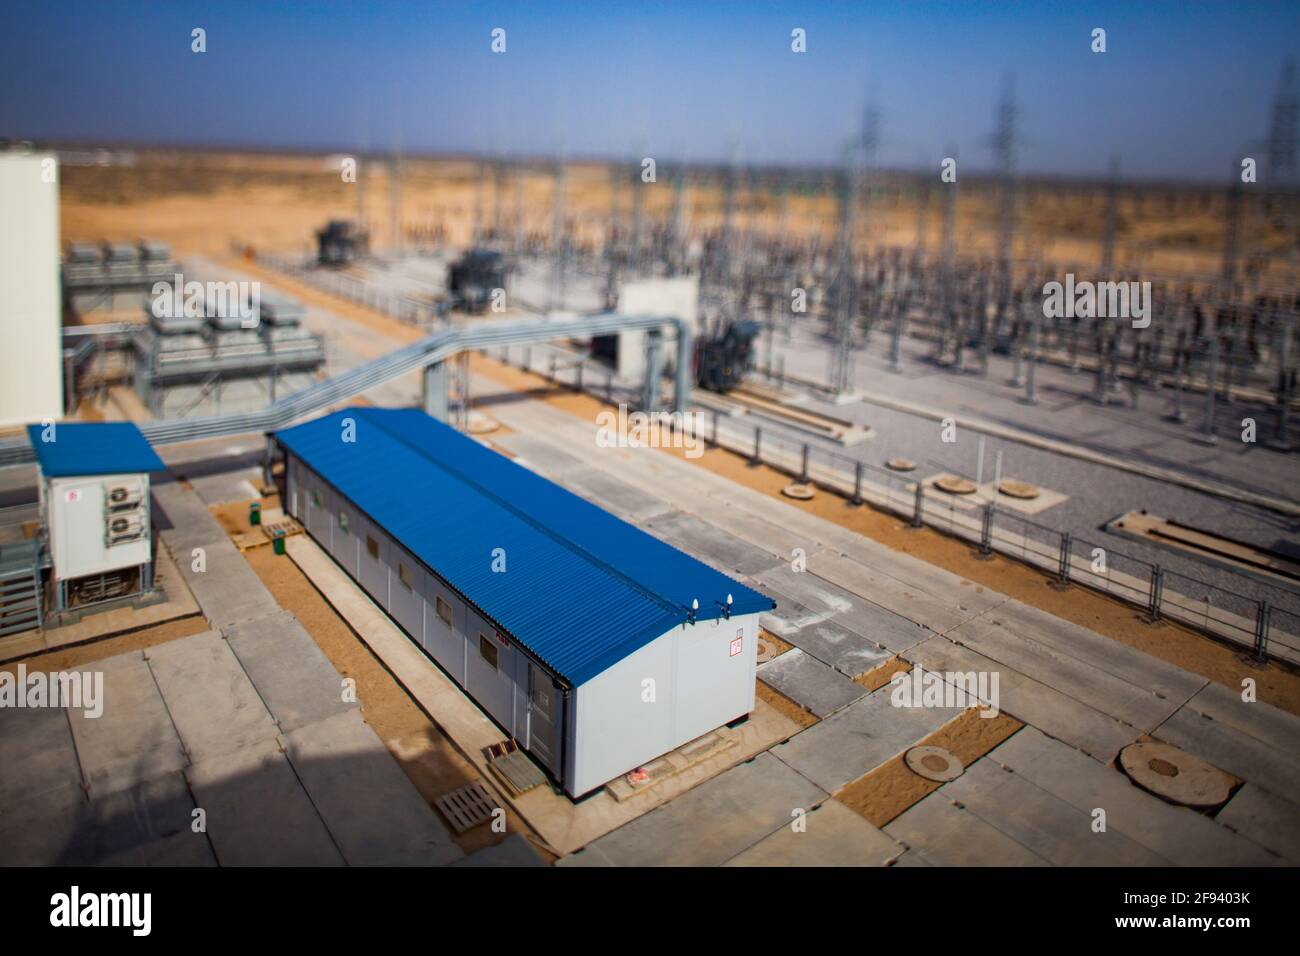 Région de Kzylorda/Kazakhstan - Mai 01 2012 : centrale à gaz moderne dans le désert. Image partiellement floue avec effet d'inclinaison. Banque D'Images